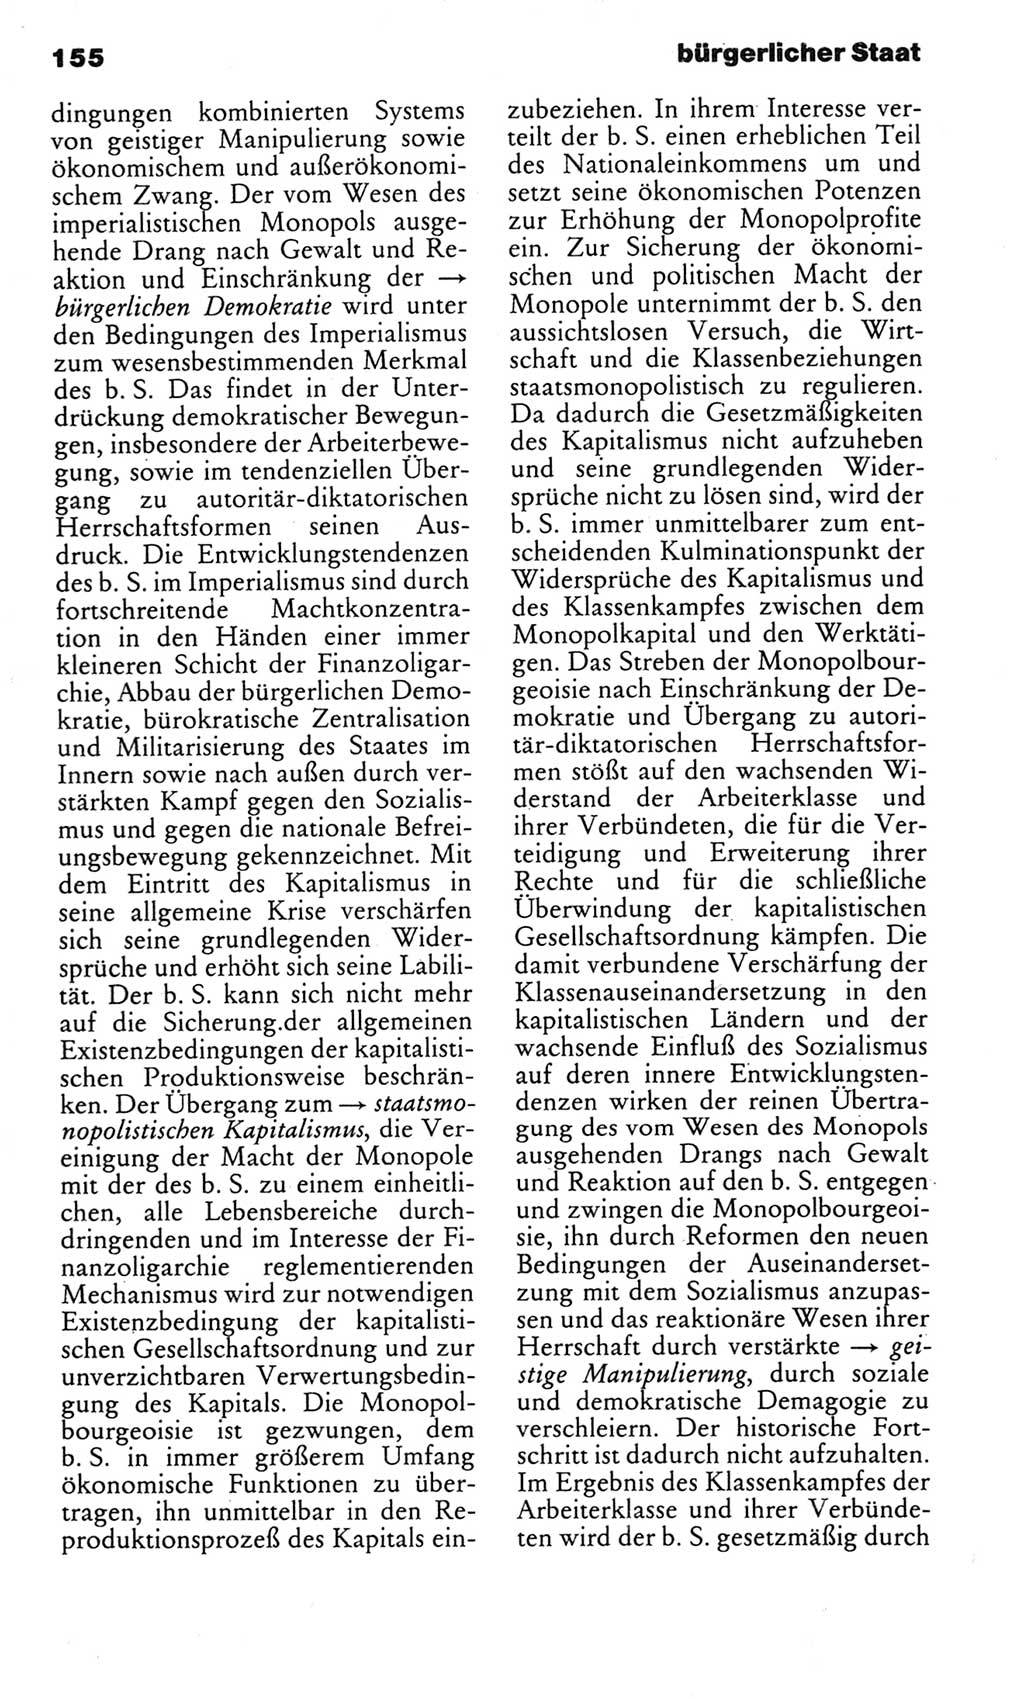 Kleines politisches Wörterbuch [Deutsche Demokratische Republik (DDR)] 1983, Seite 155 (Kl. pol. Wb. DDR 1983, S. 155)